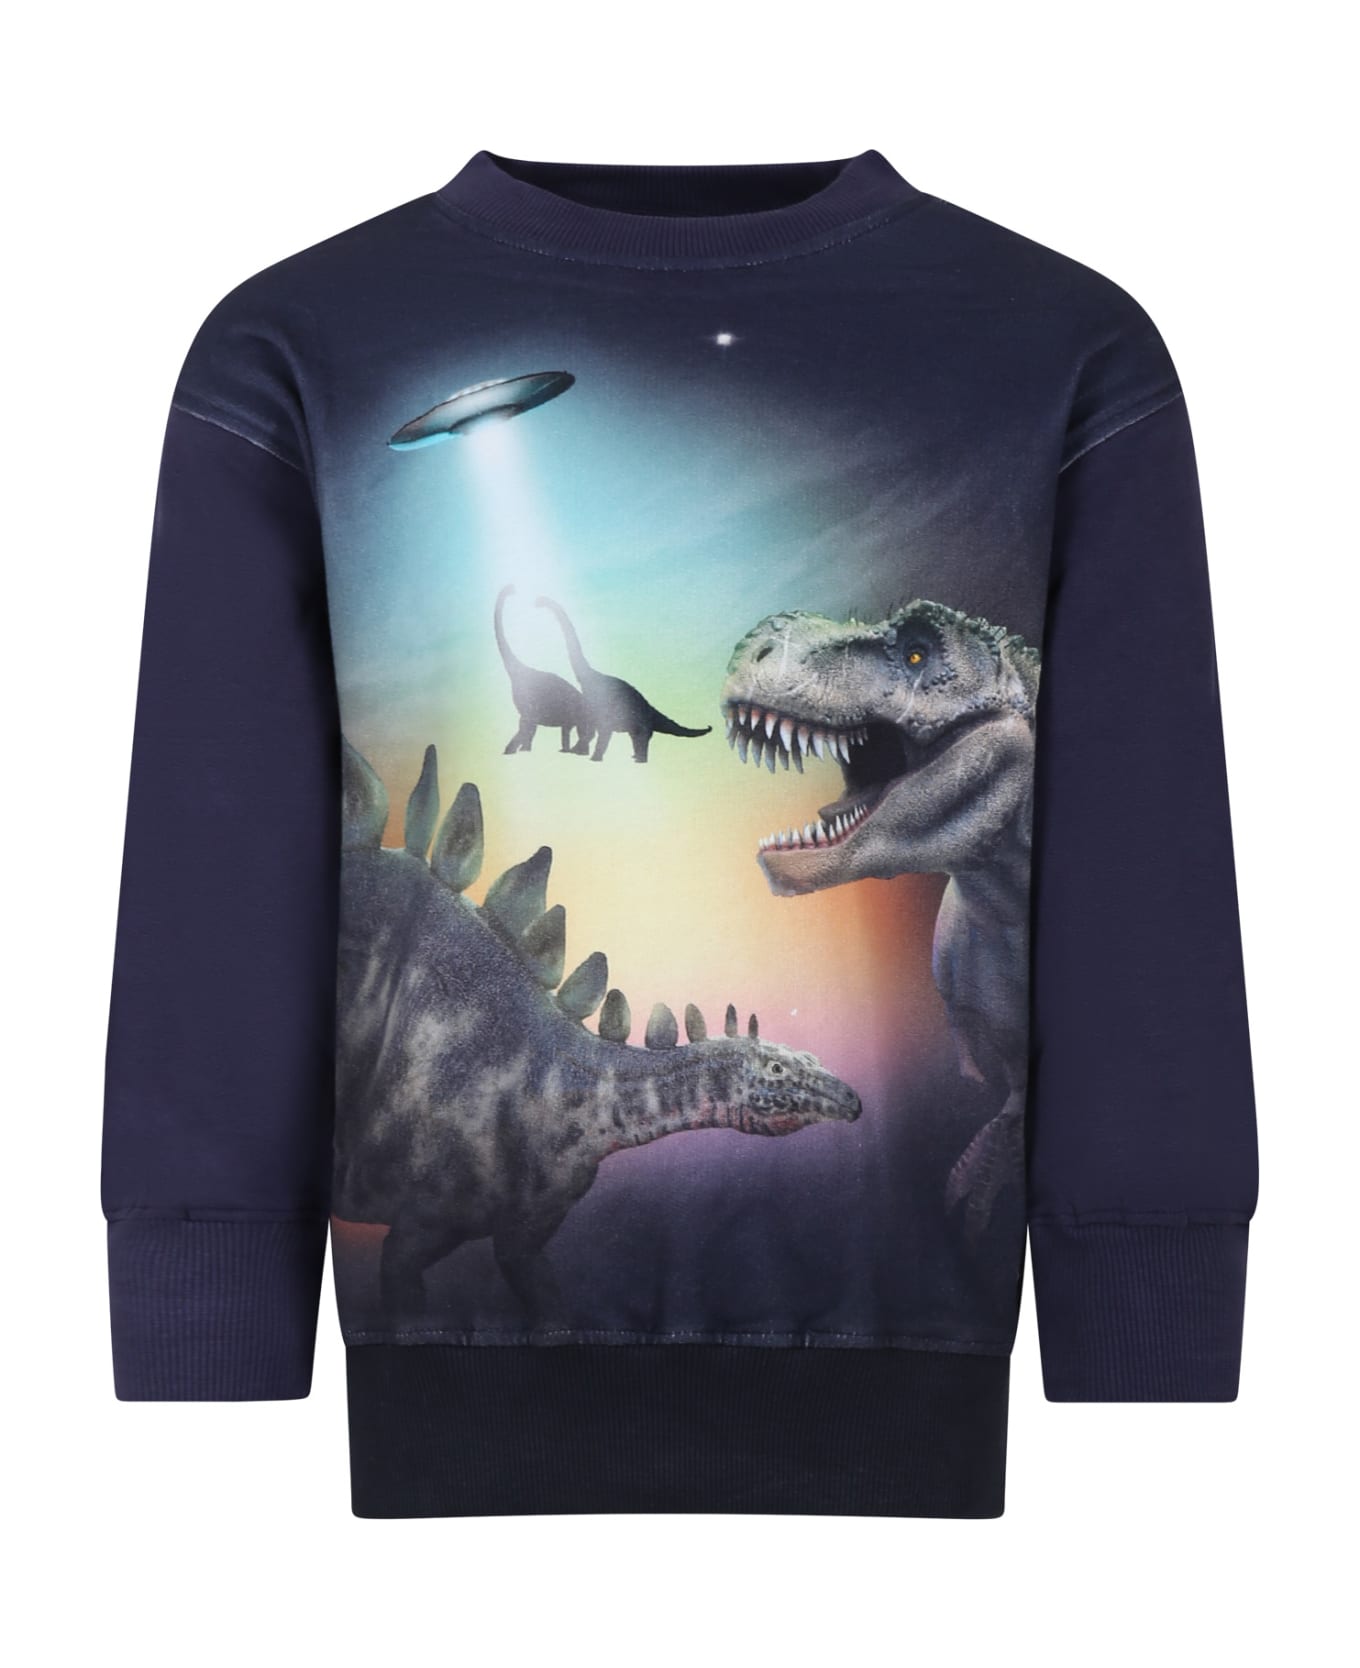 Molo Blue Sweatshirt For Boy With Dinosaurs - Blue ニットウェア＆スウェットシャツ